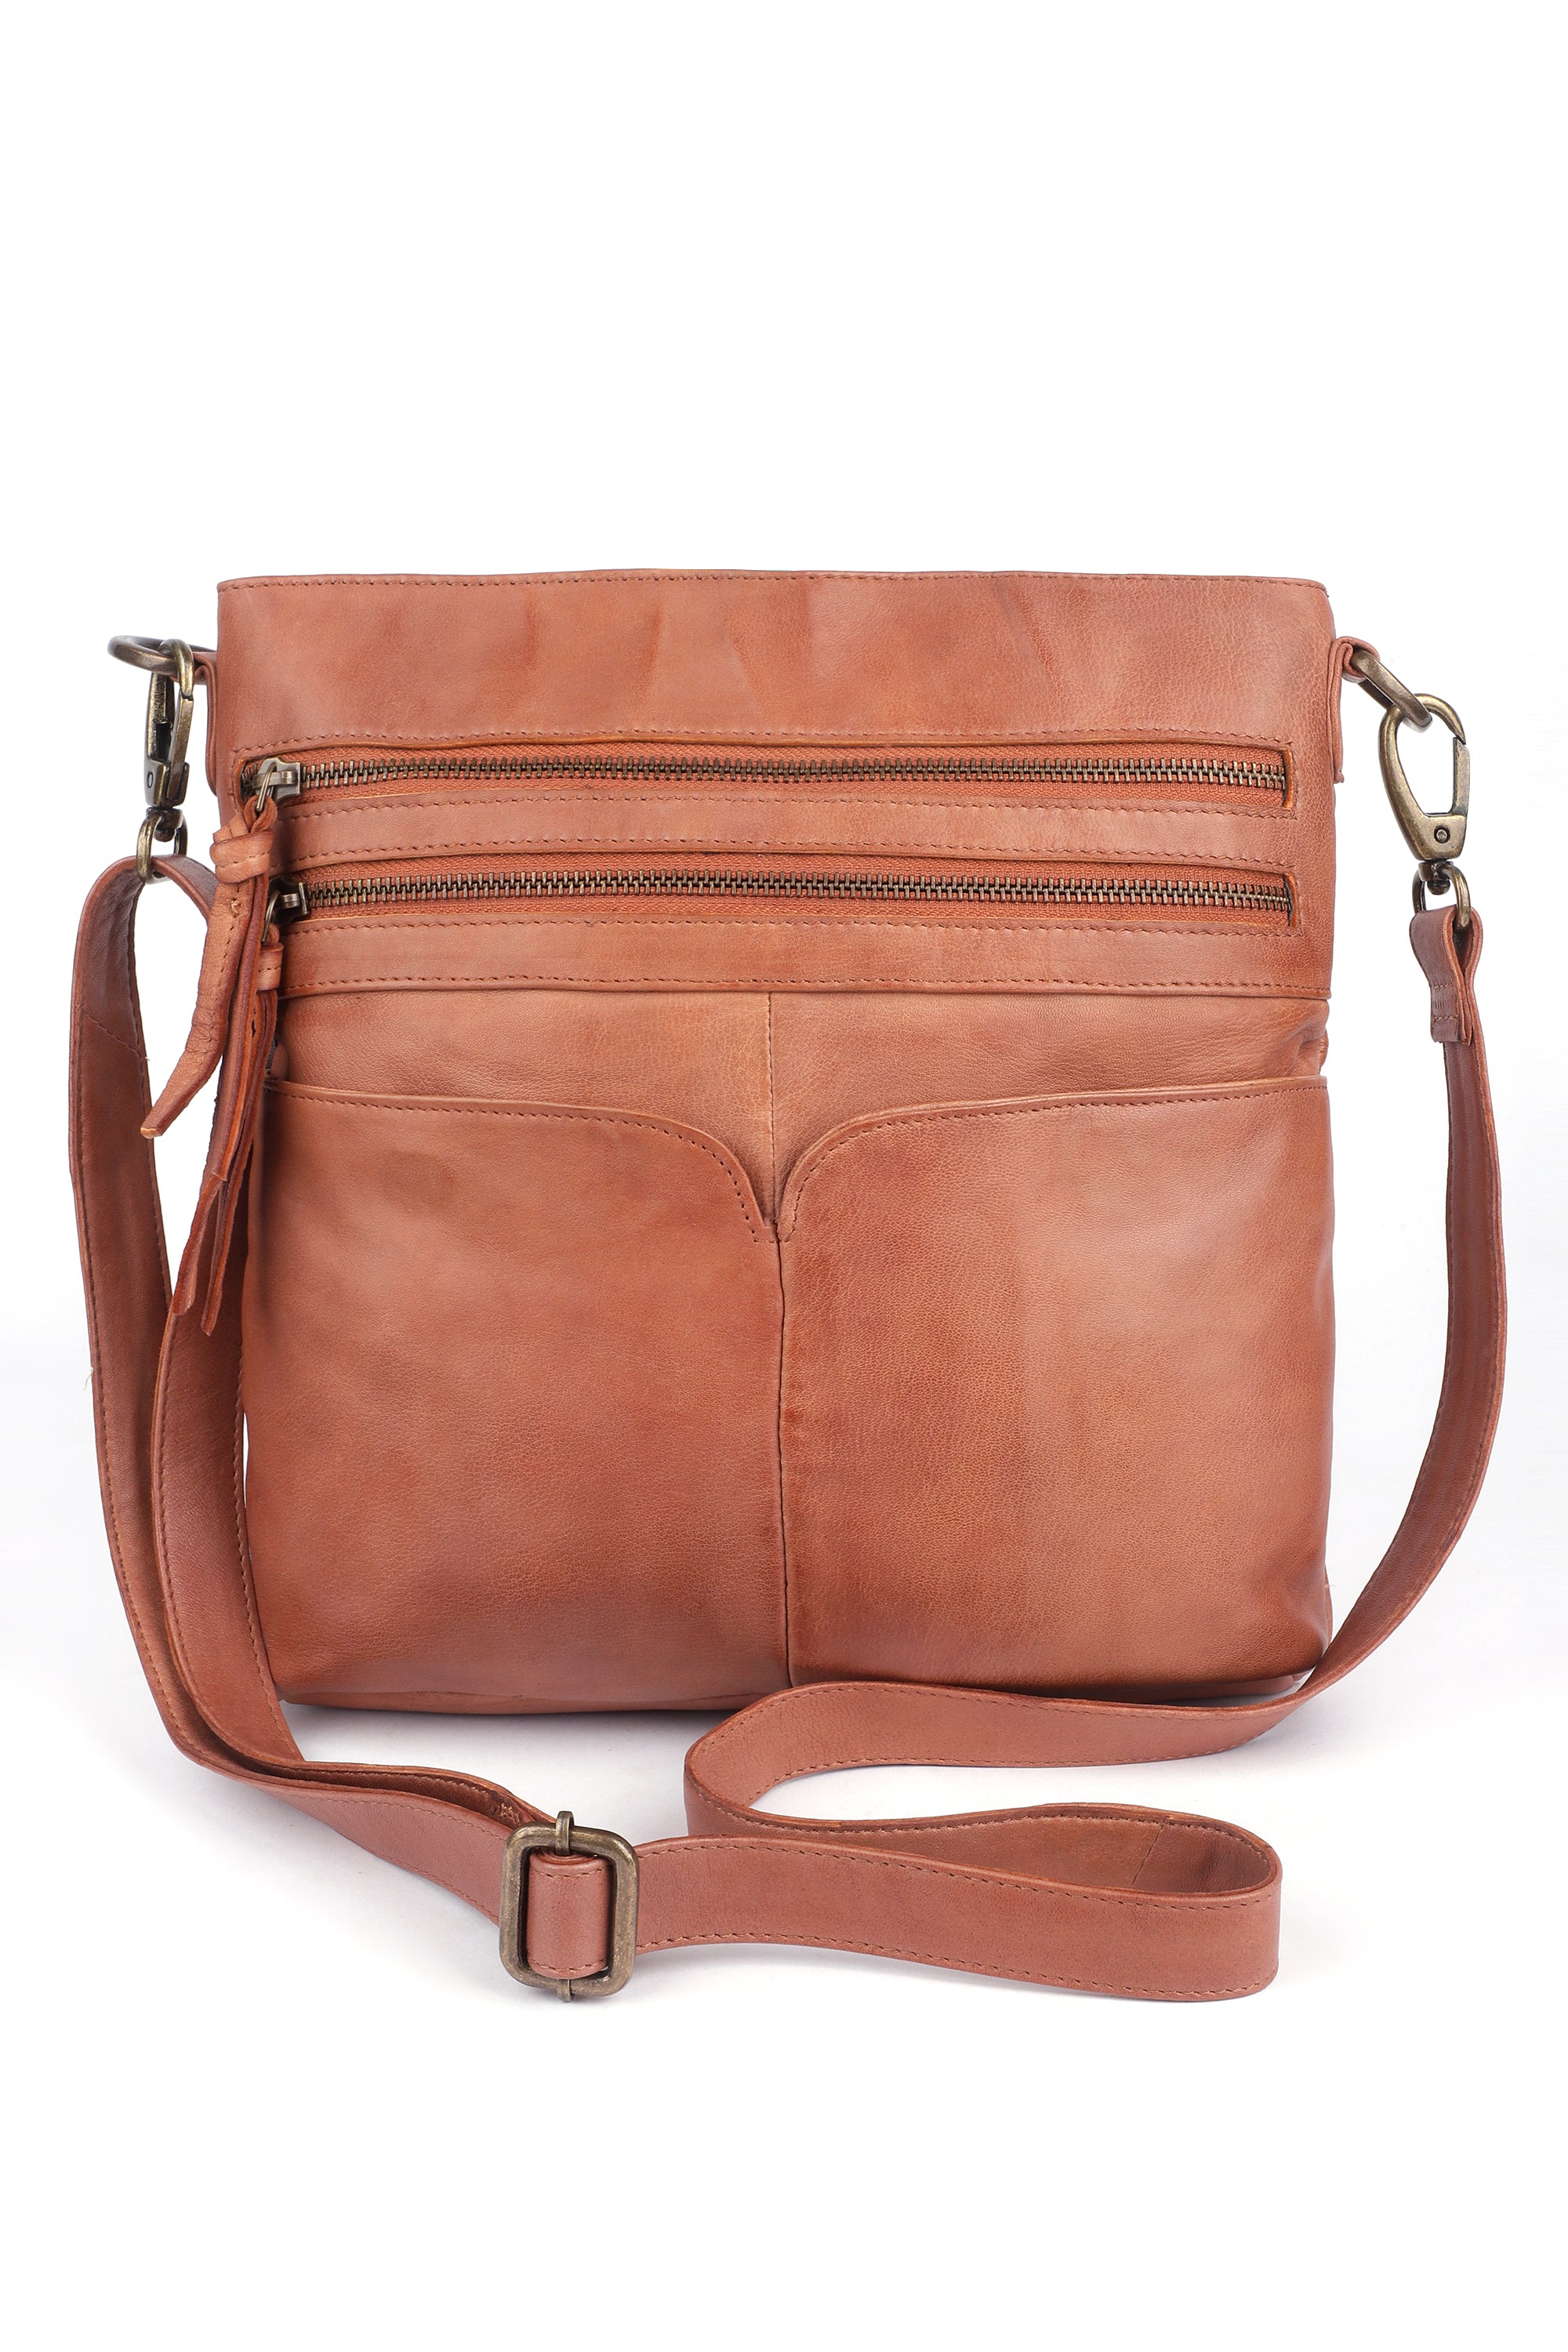 Buy Women's Brown Across The Body Bags Online